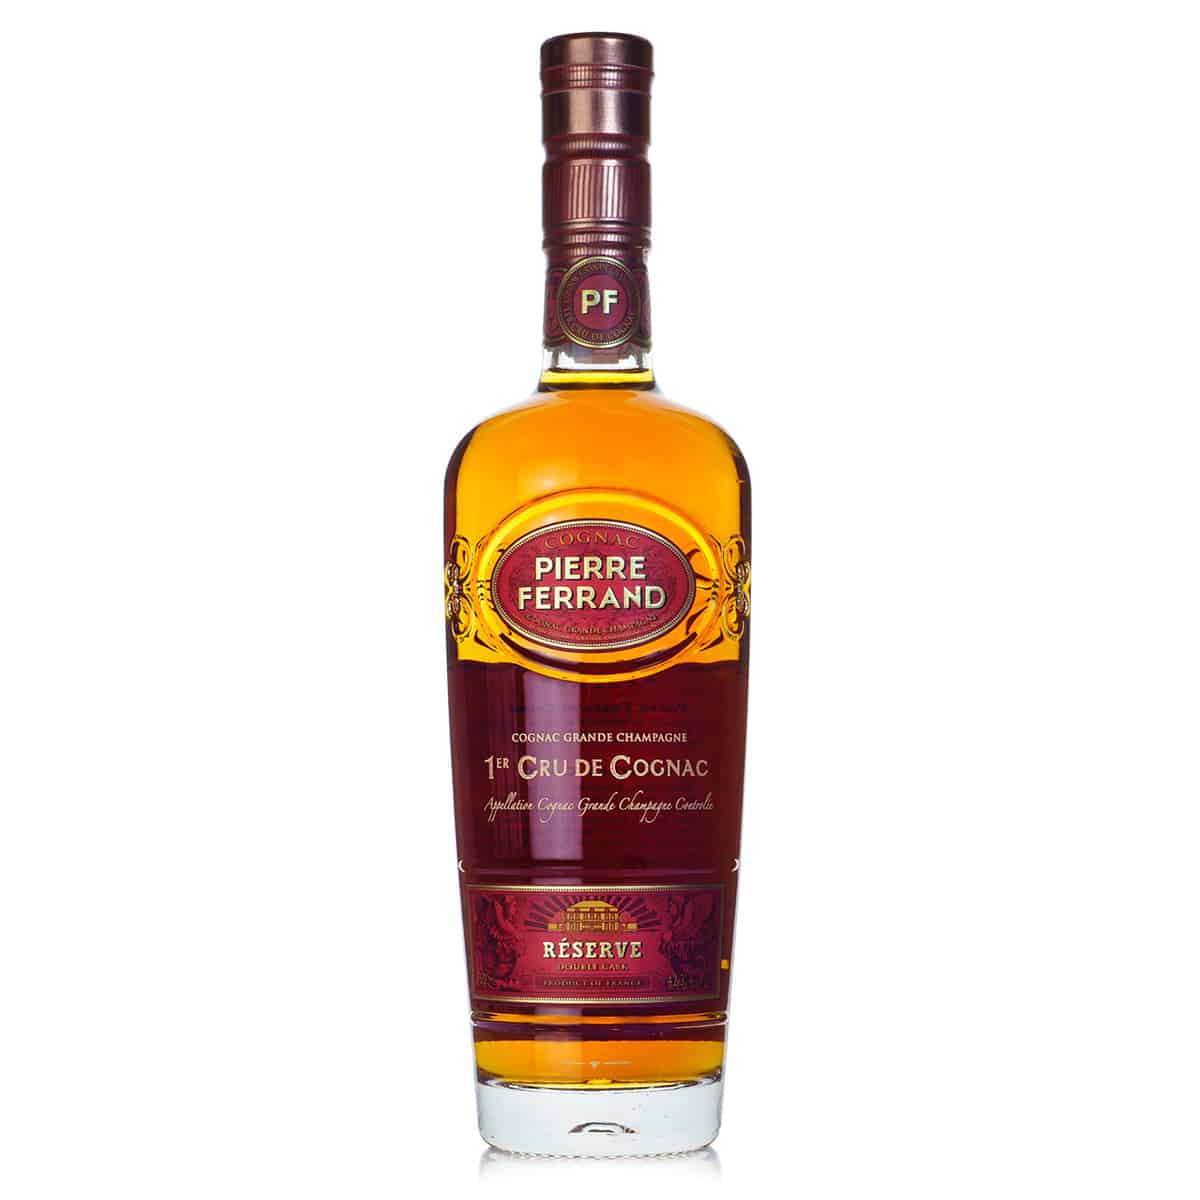 Pierre Ferrand Double Cask Reserve Cognac